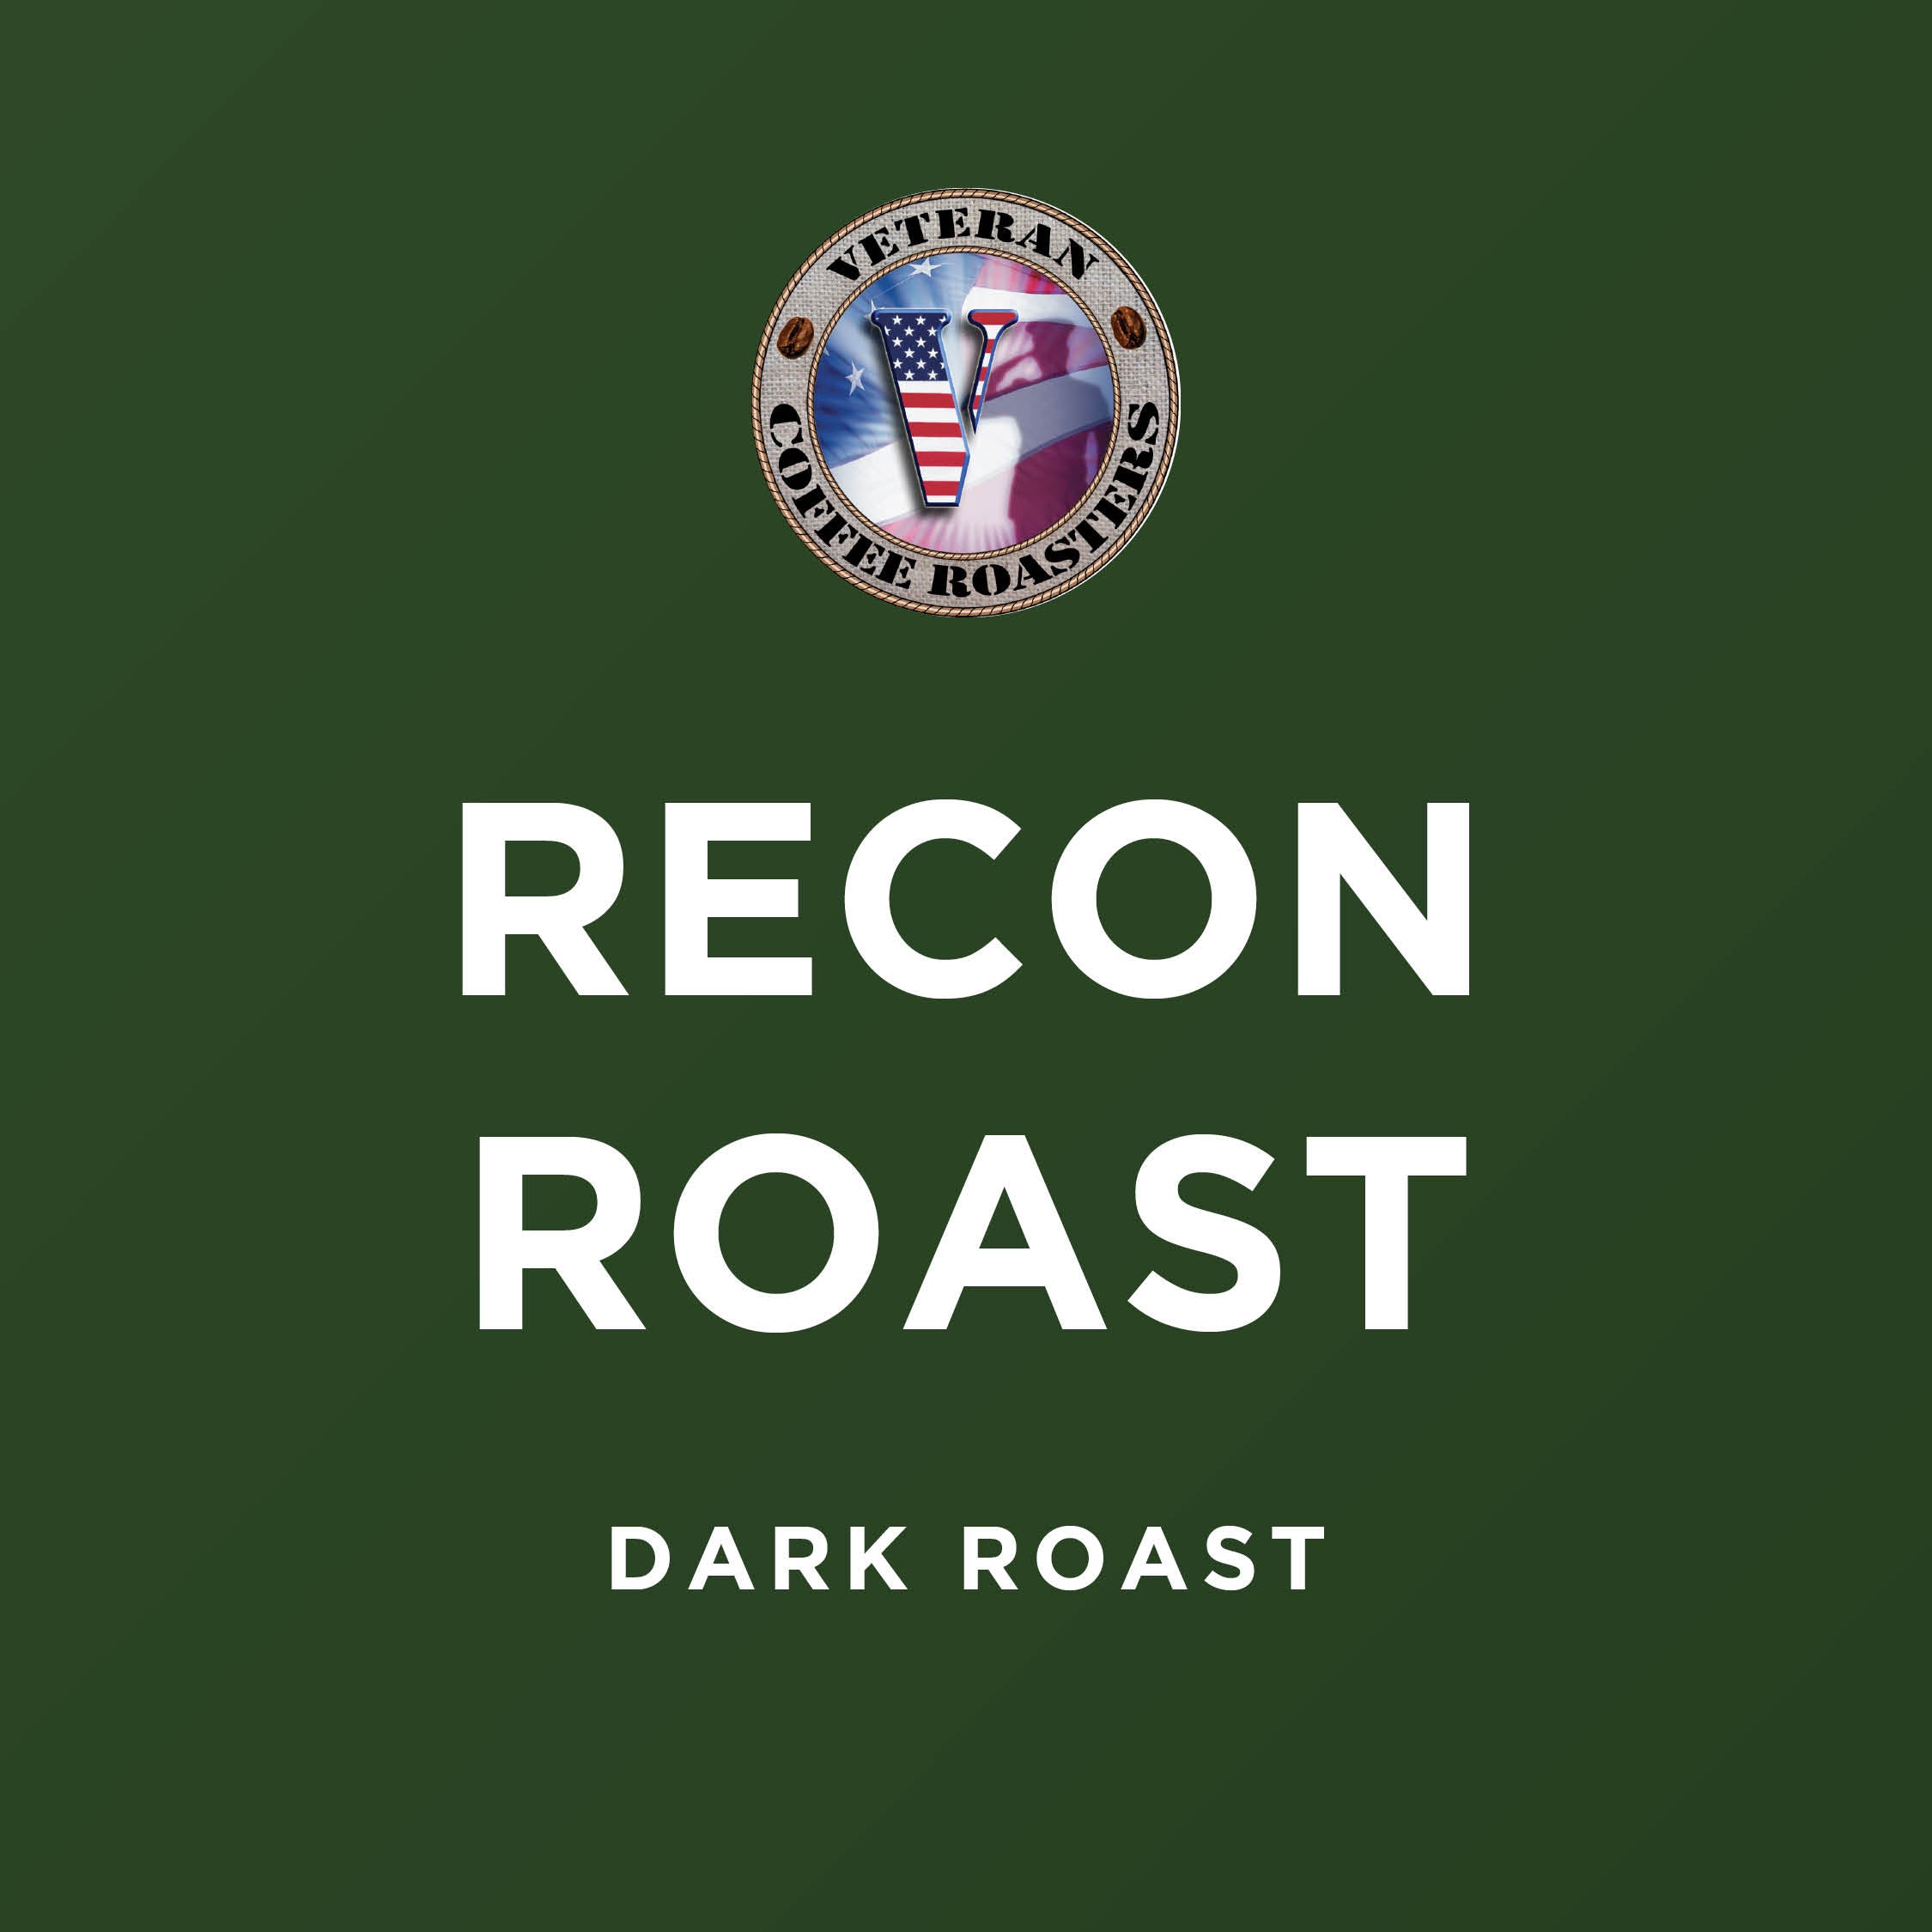 Recon Roast